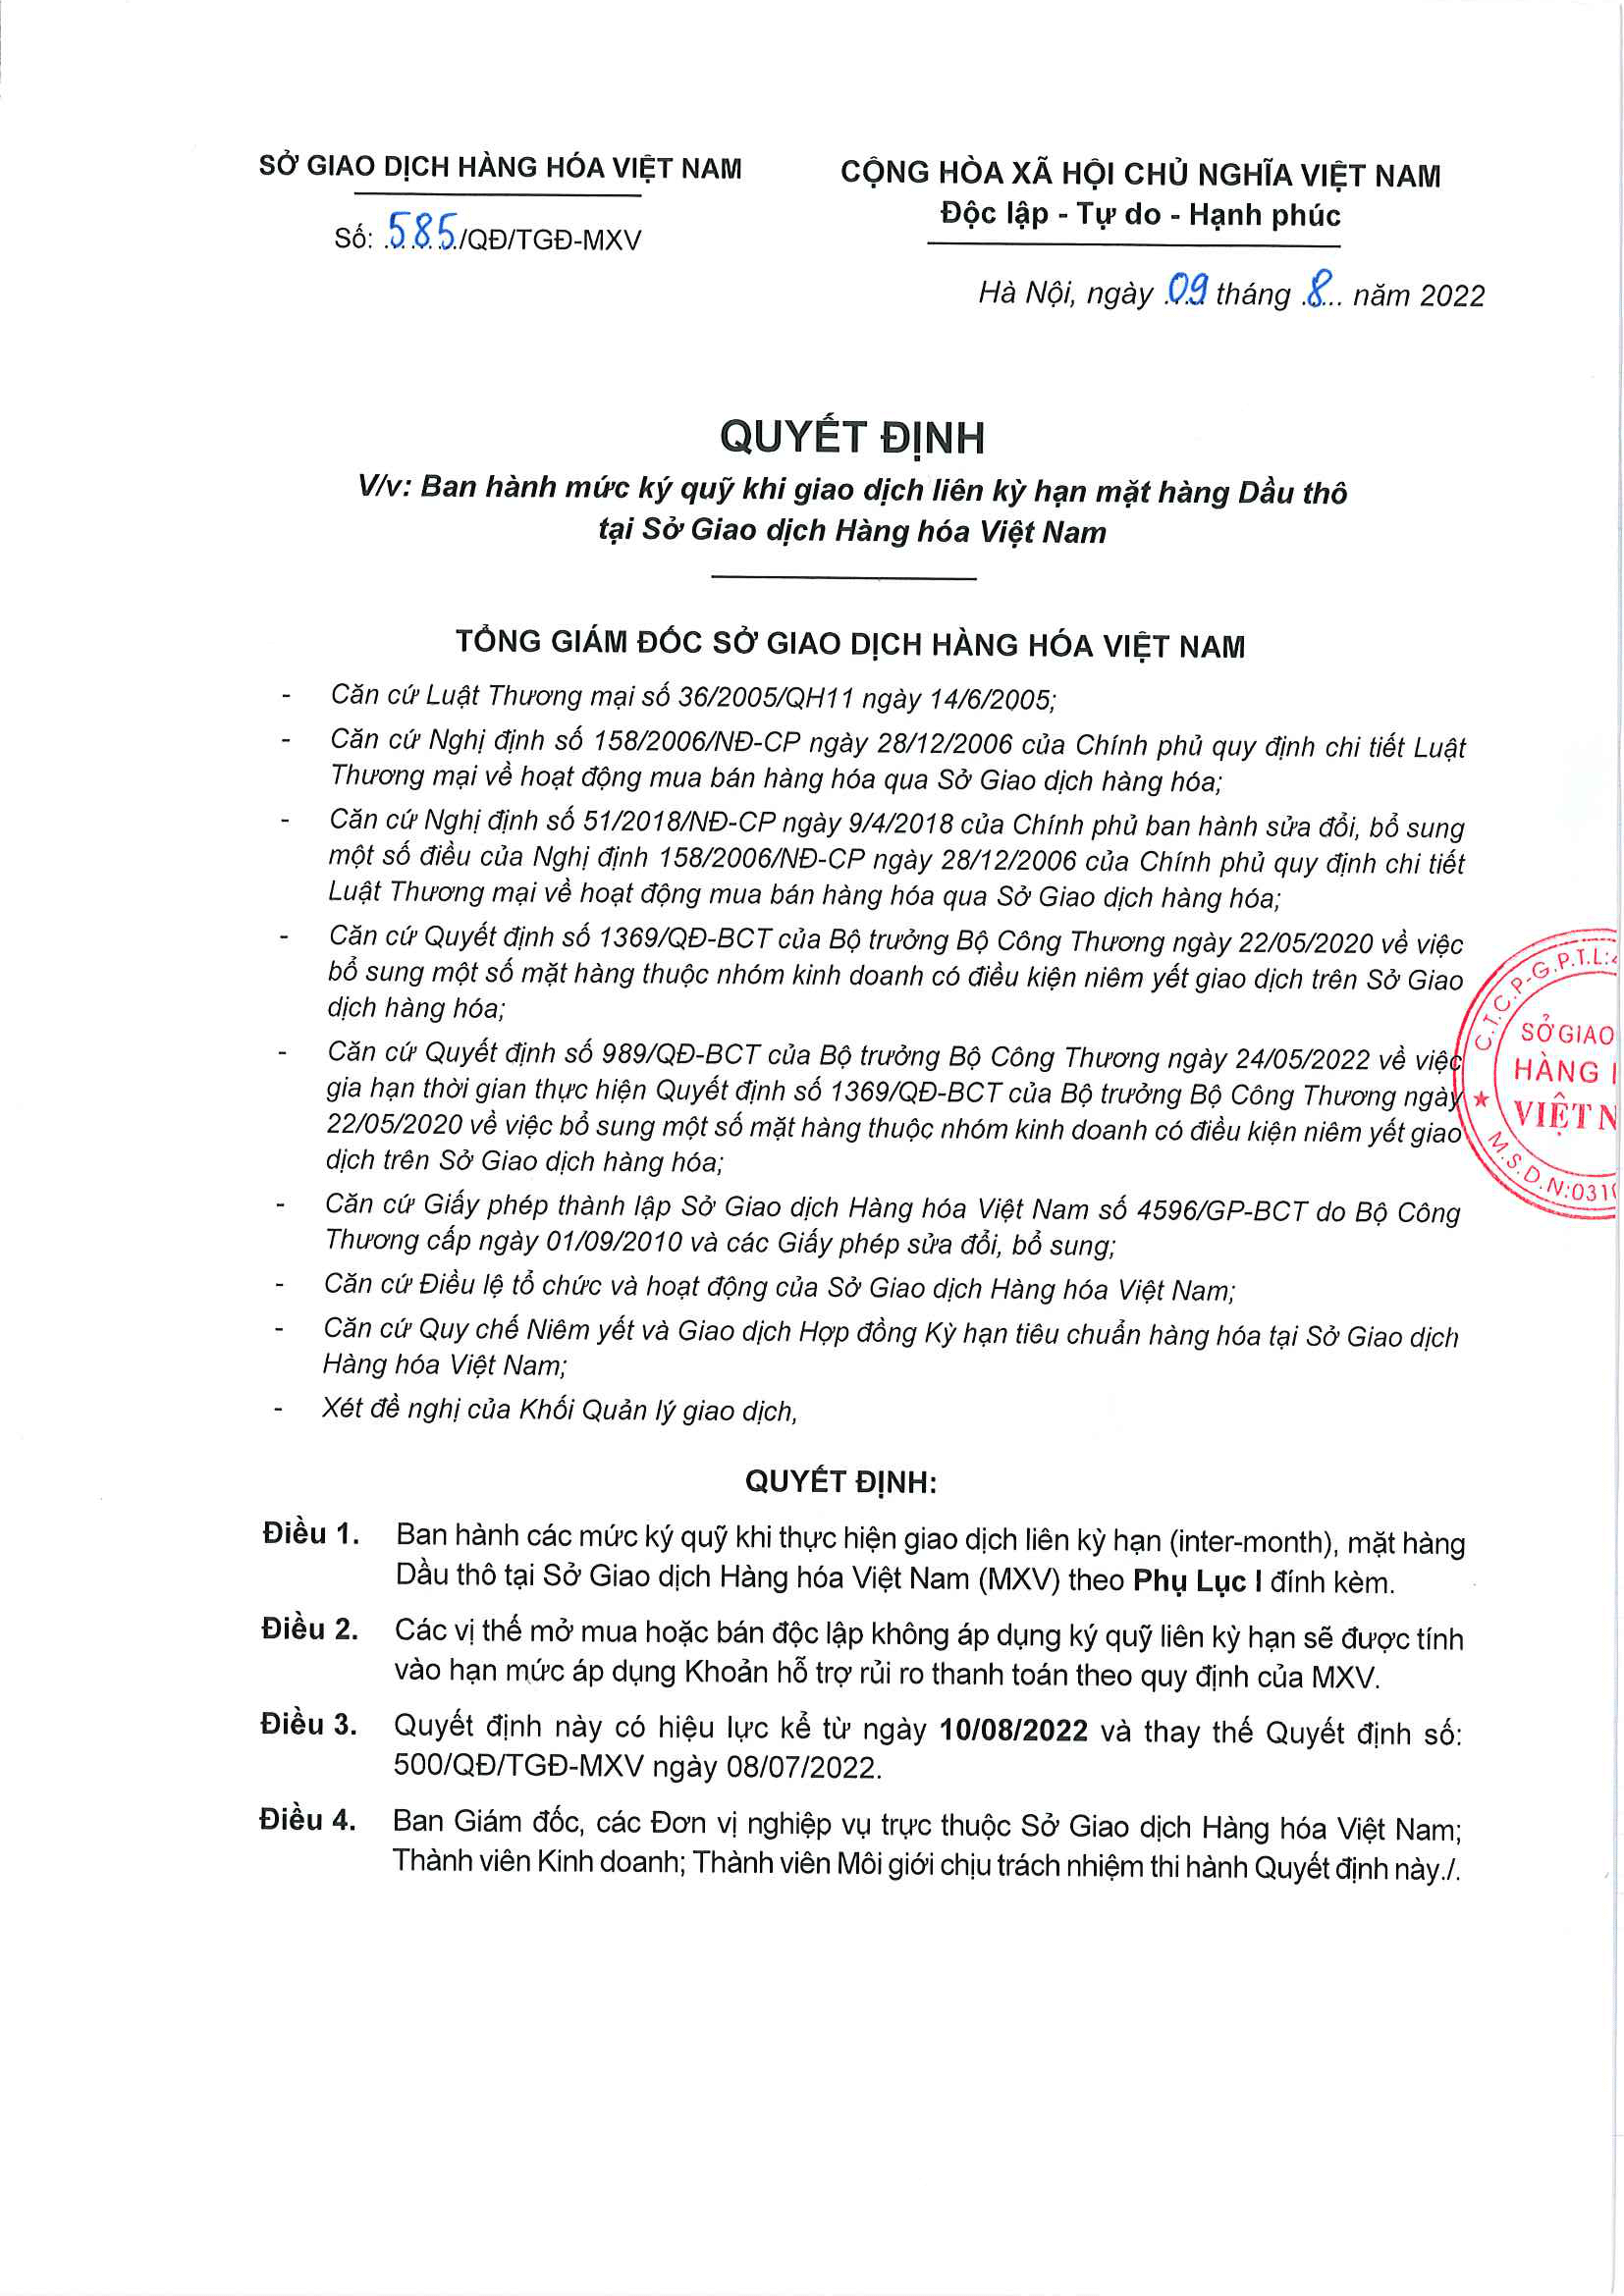 Liên Kỳ Hạn Mặt Hàng Dầu Thô Ngày 10/08/2022